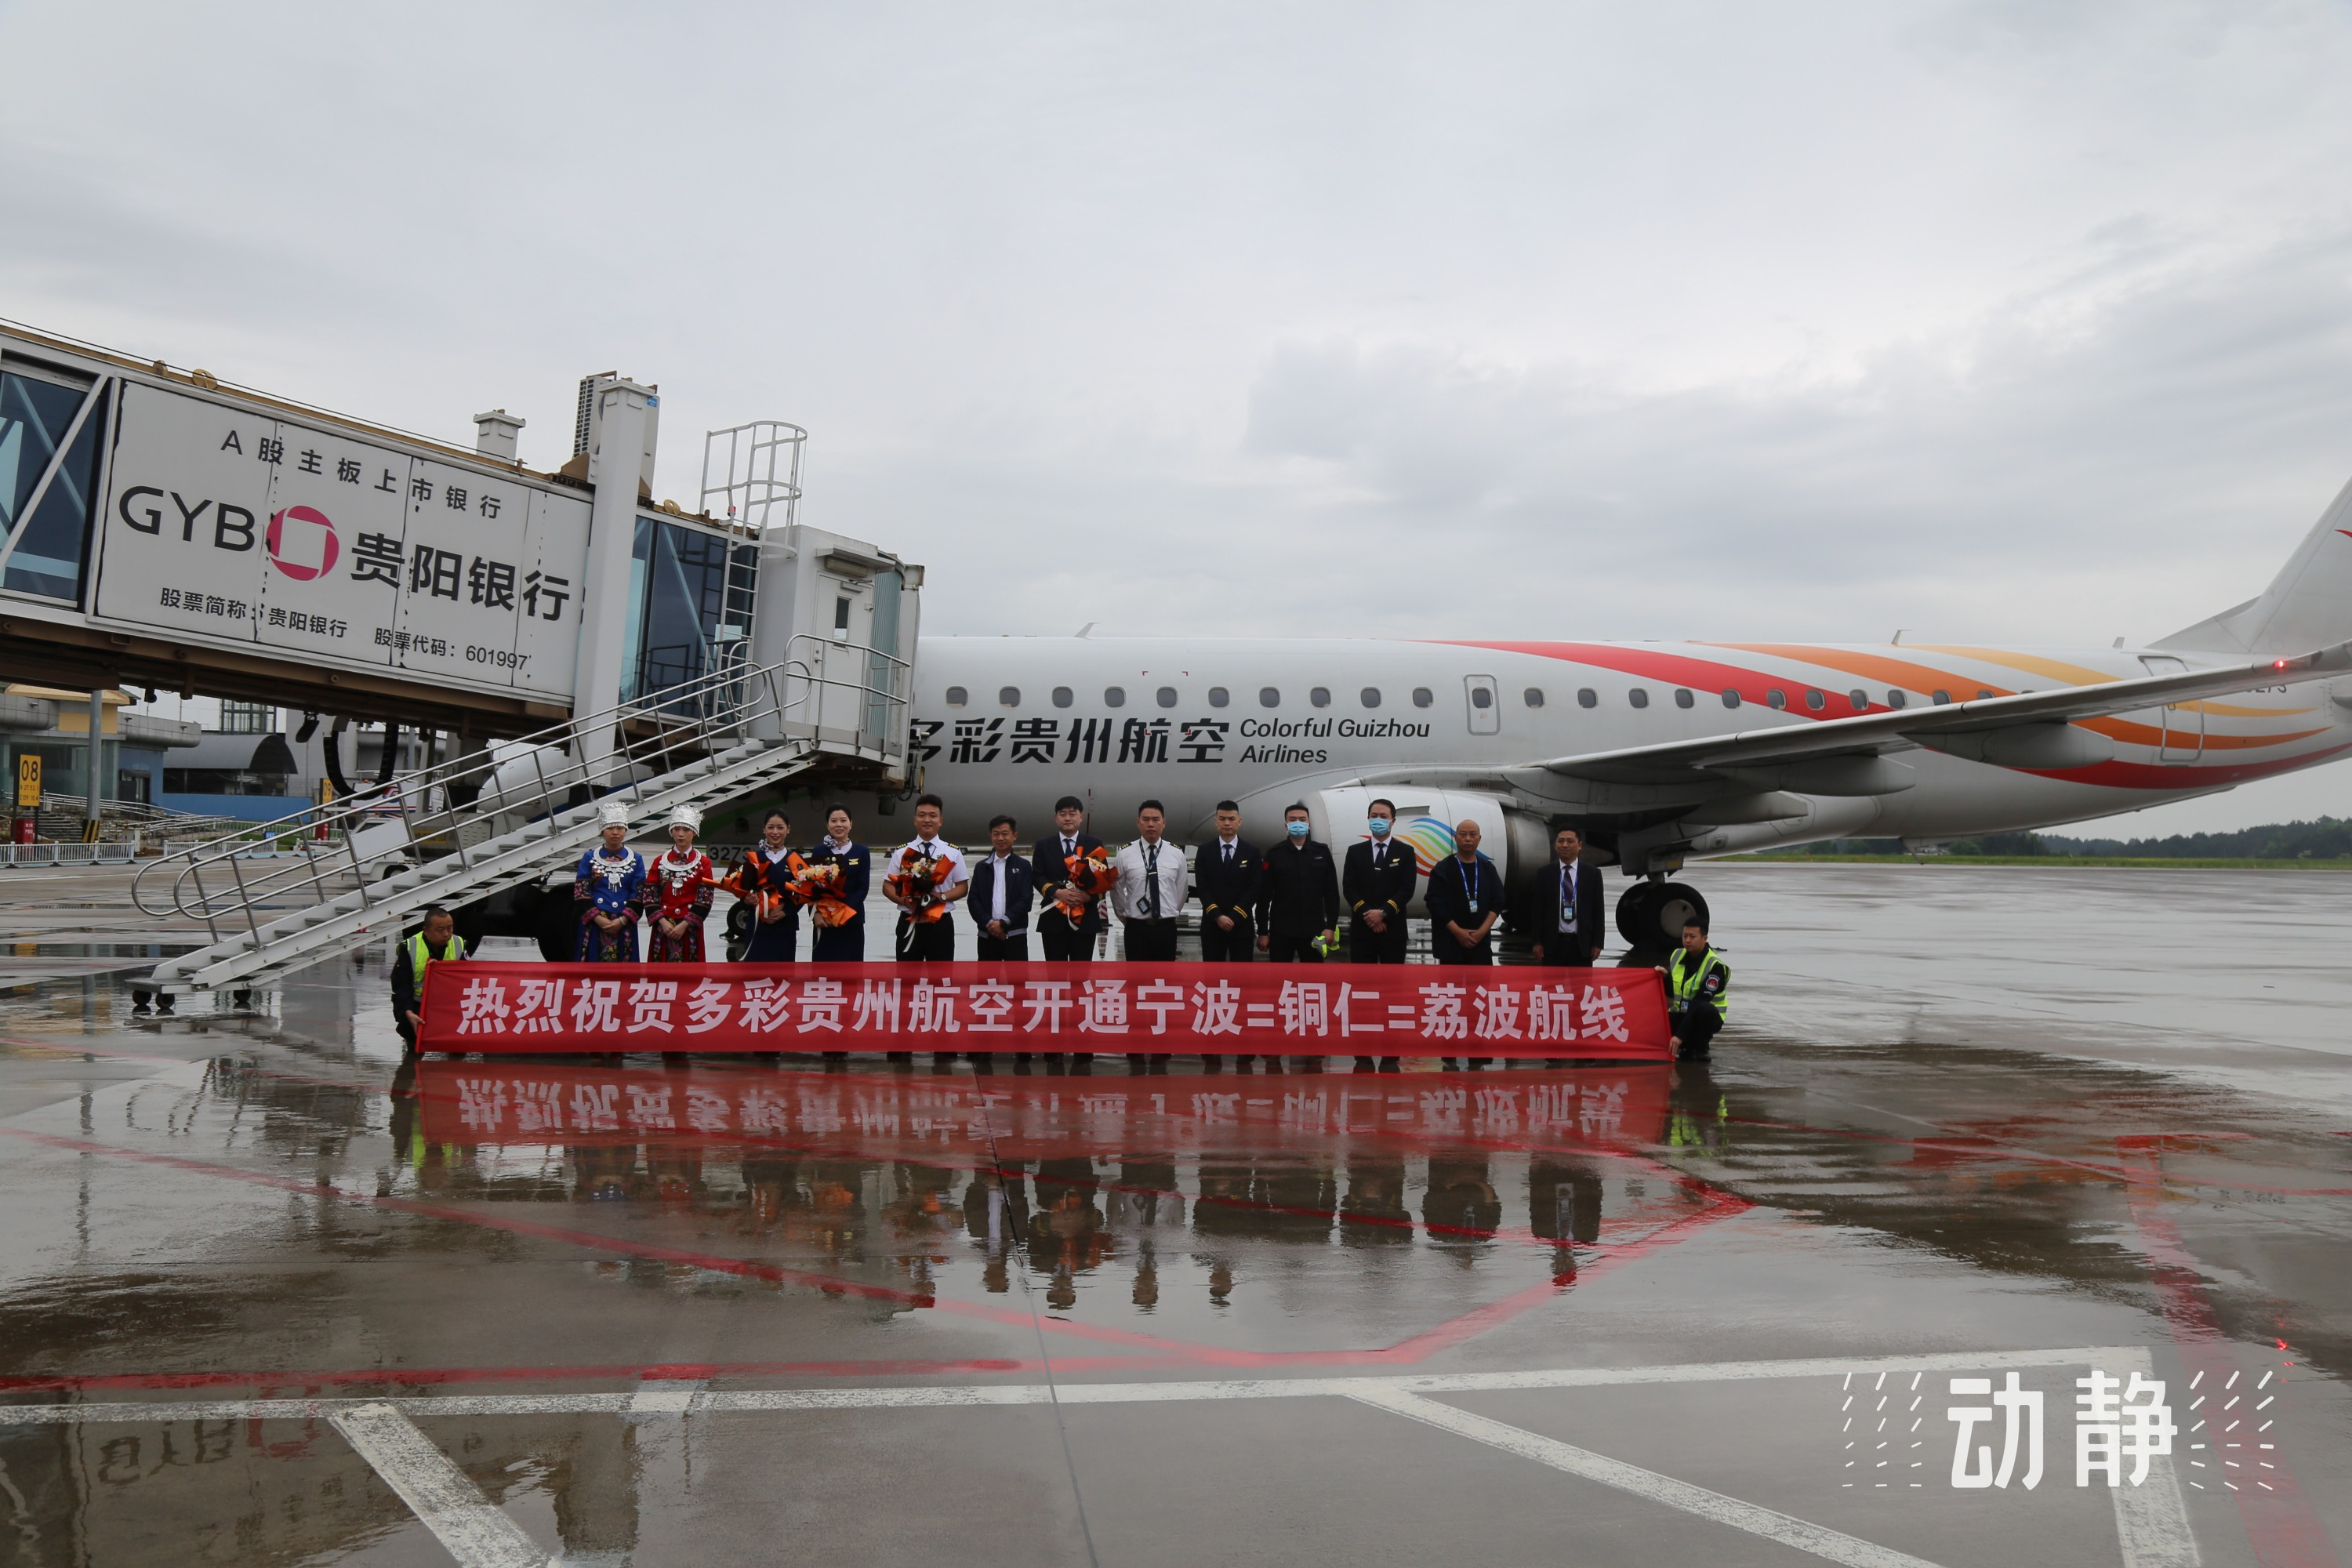 机场驶来的e190型客机平稳降落在铜仁机场,宁波=铜仁=荔波航线的开通